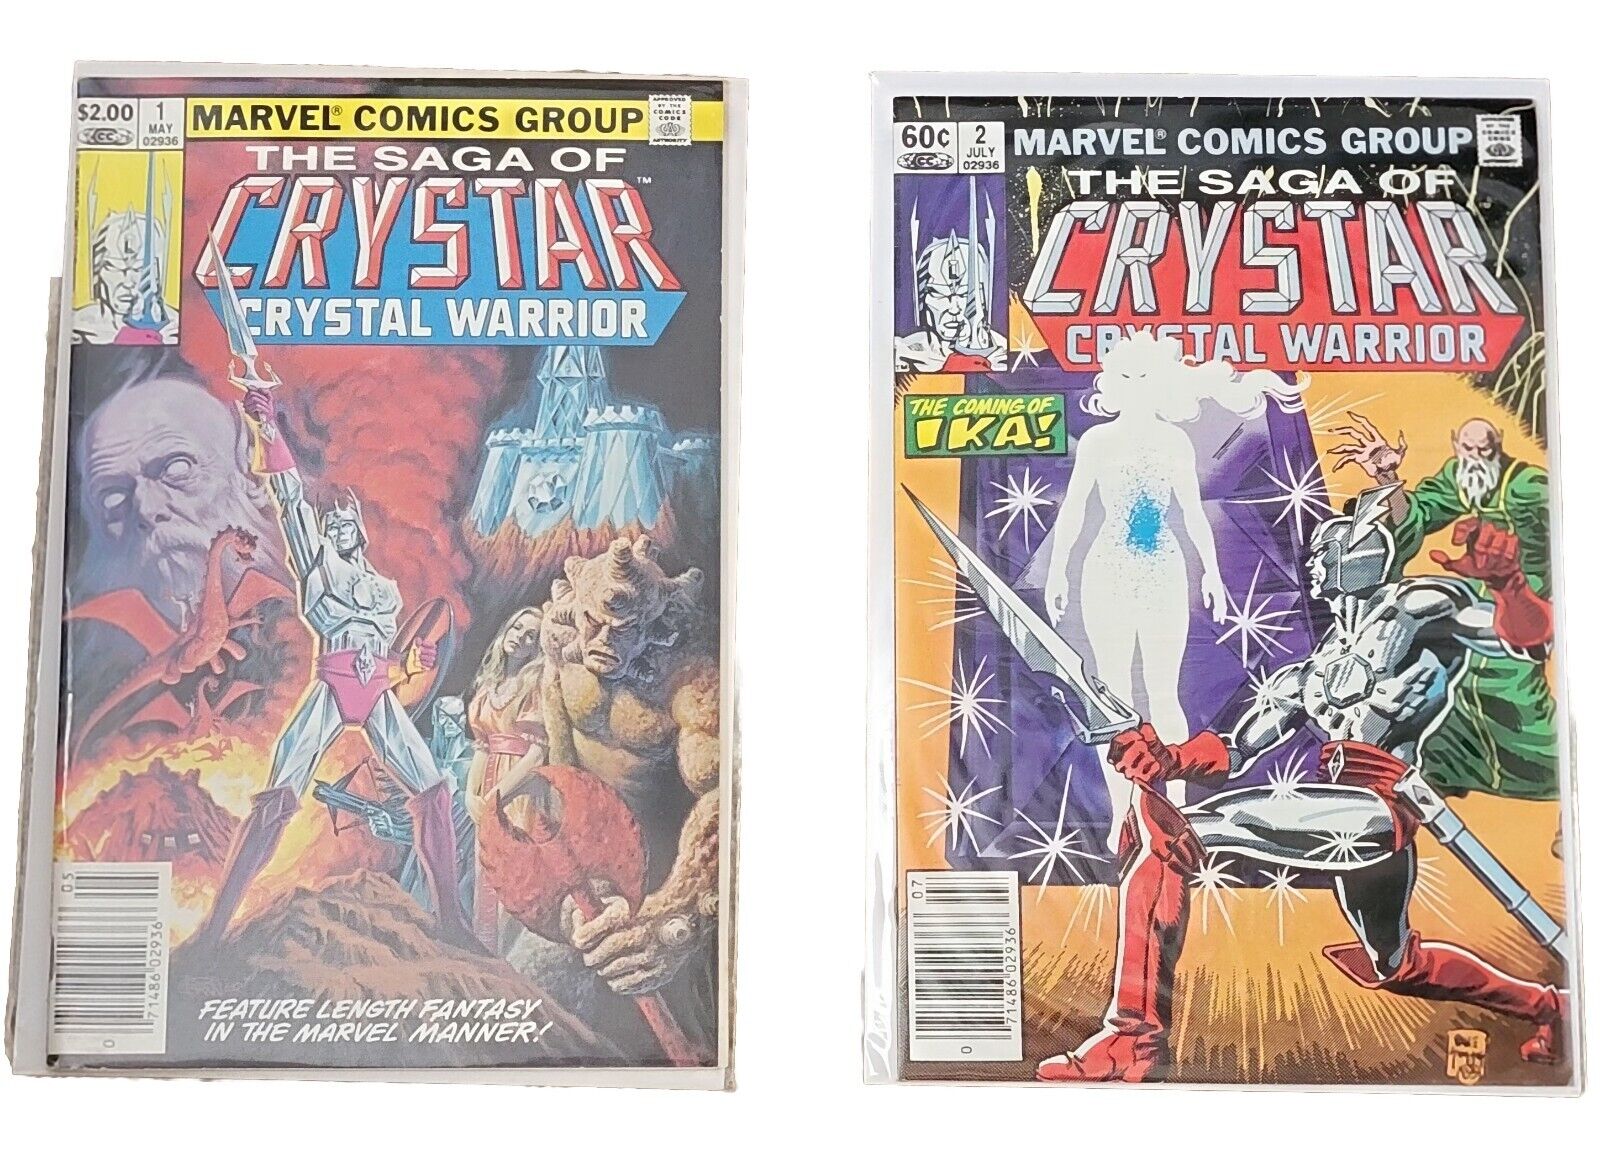 THE SAGA OF CRYSTAR CRYSTAL WARRIOR #1 #2 (1983) Marvel Comics 1st App. Crystar